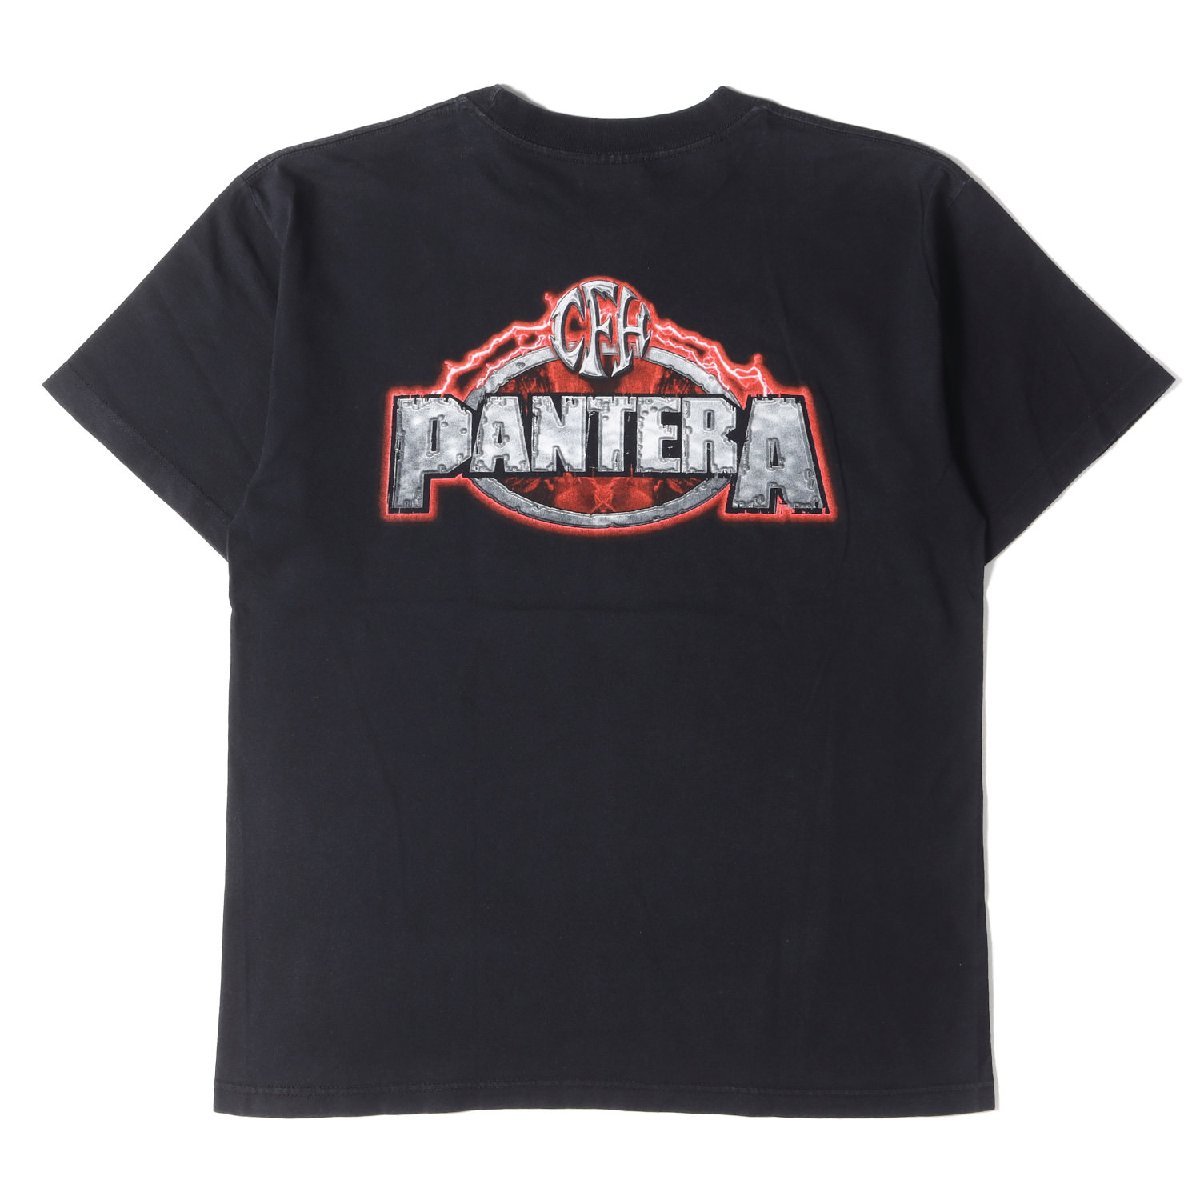 Vintage Rock Item ヴィンテージロック 00s PANTERA パンテラ スカル デザイン クルーネック 半袖 Tシャツ WINTERLANDボディ ブラック L